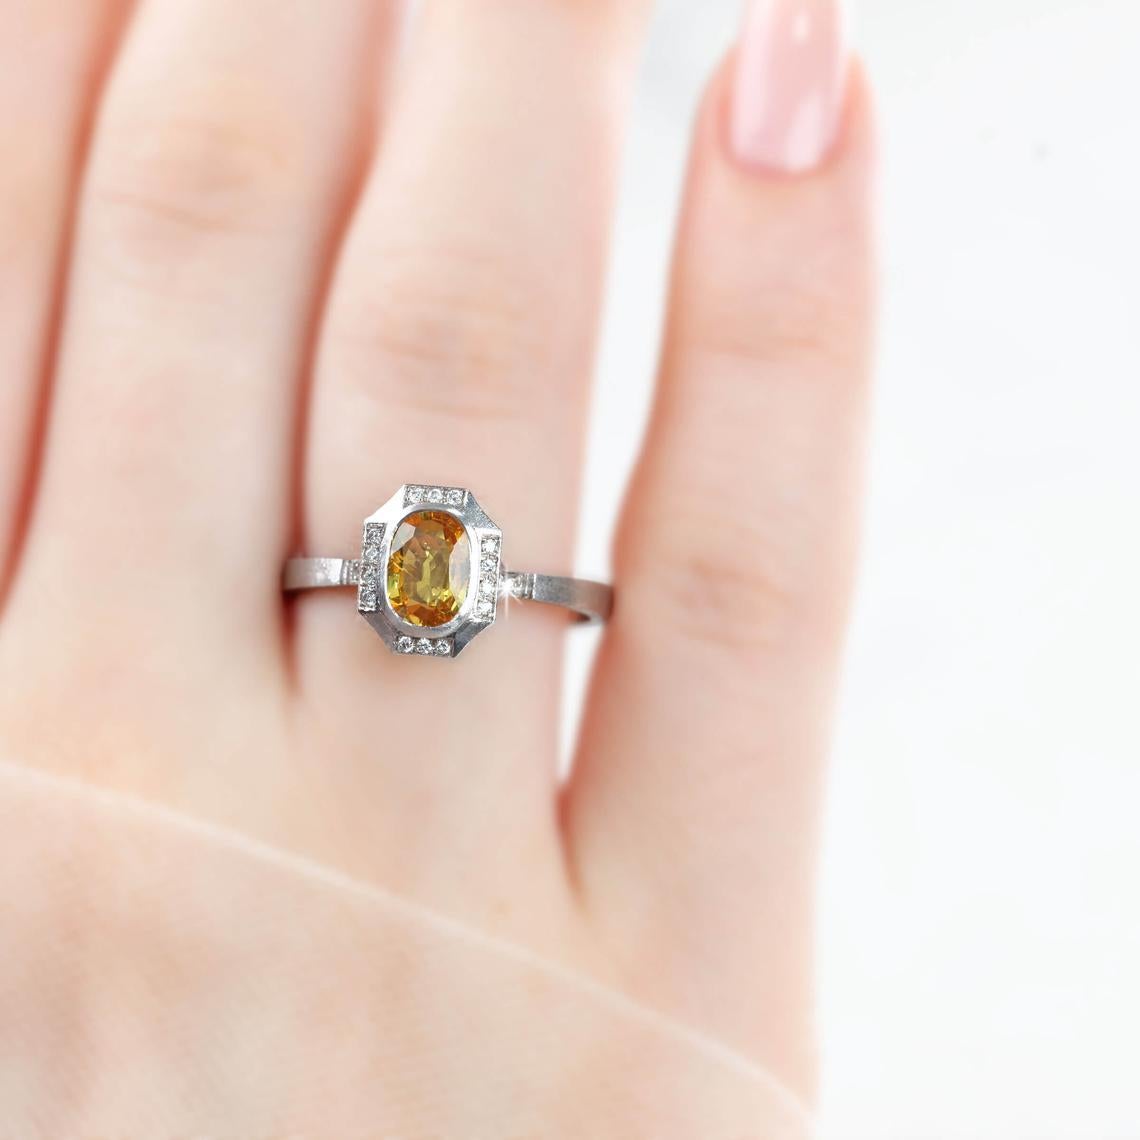 Vintage Gelber Saphir mit Diamant Verlobungsring, 14K Solitär Ring, von Händen aus Ring, um den Stein Formen erstellt. Gute Ideen für einen Statement-Ring oder einen Verlobungsring als Geschenk für sie.

Ich habe brillante gelbe Diamanten im